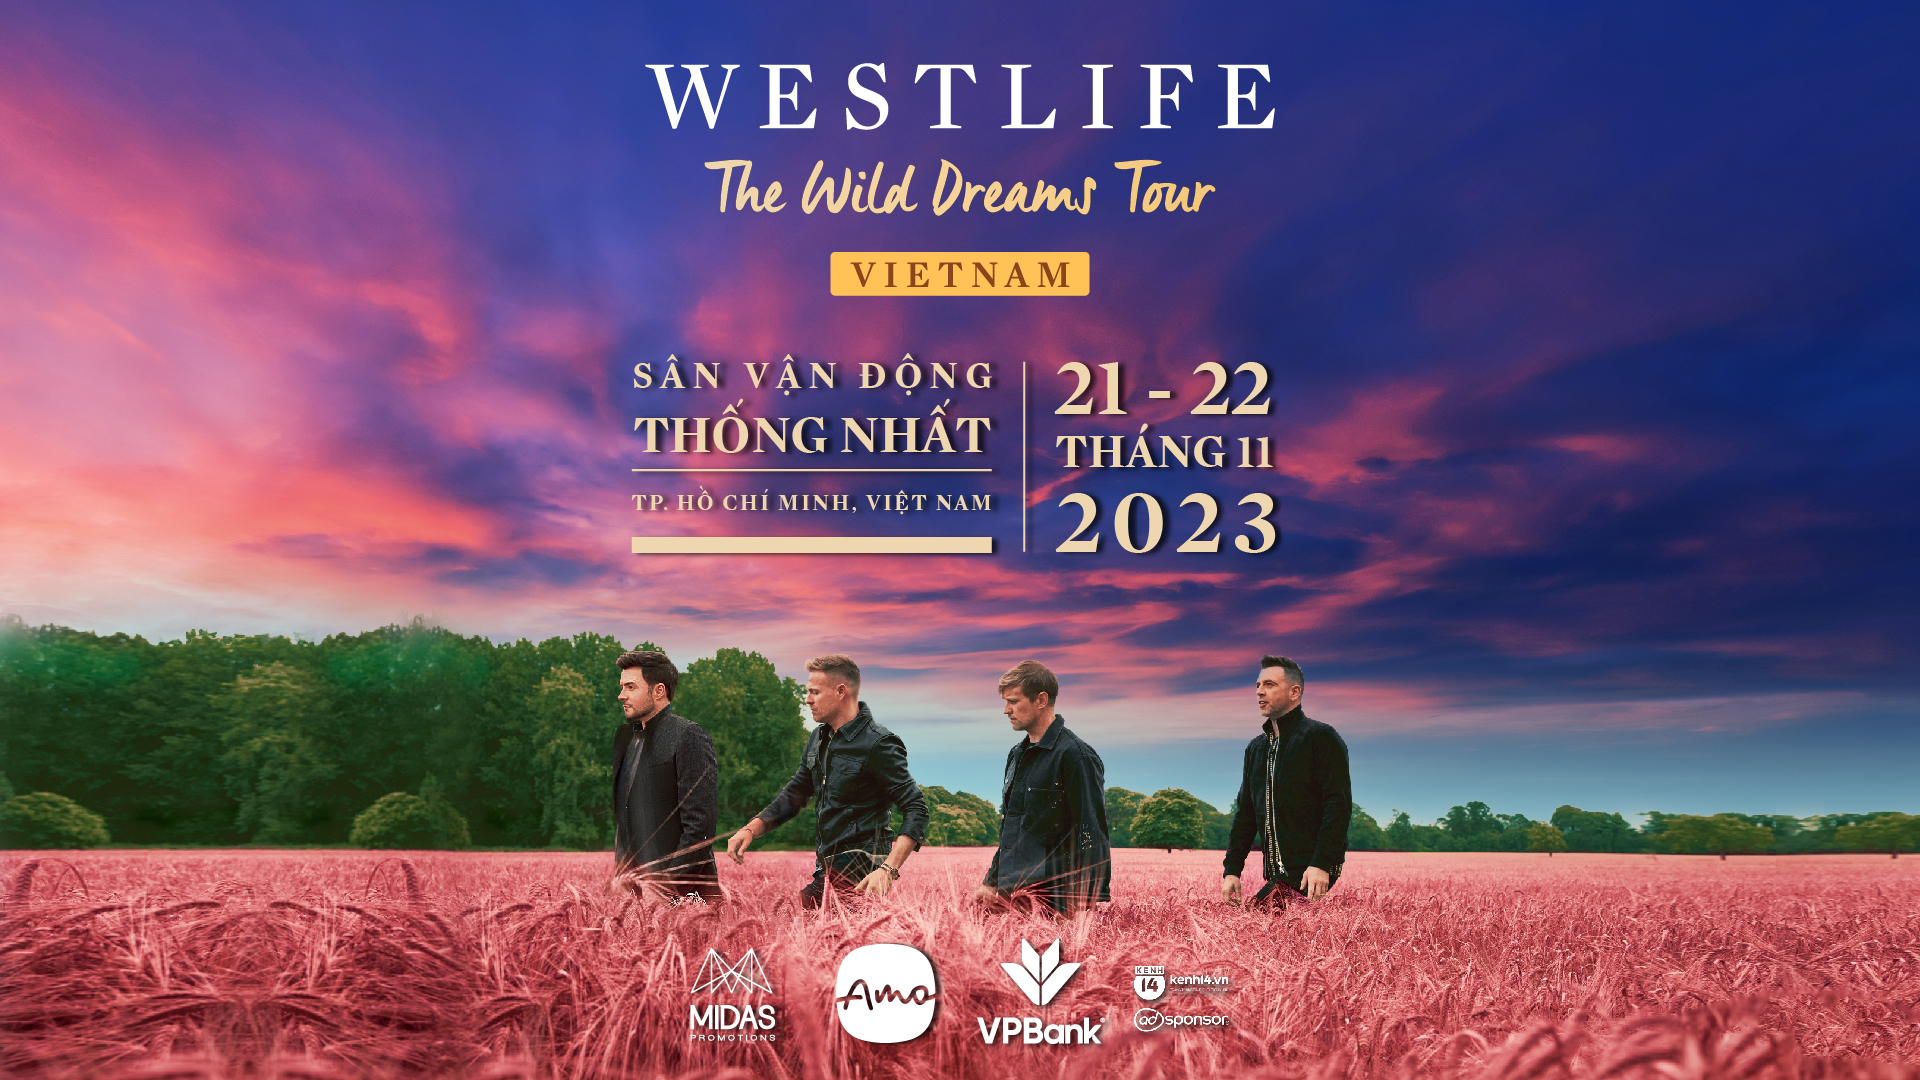 Concert Westlife mở thêm đêm diễn thứ 2 tại Việt Nam - ảnh 1